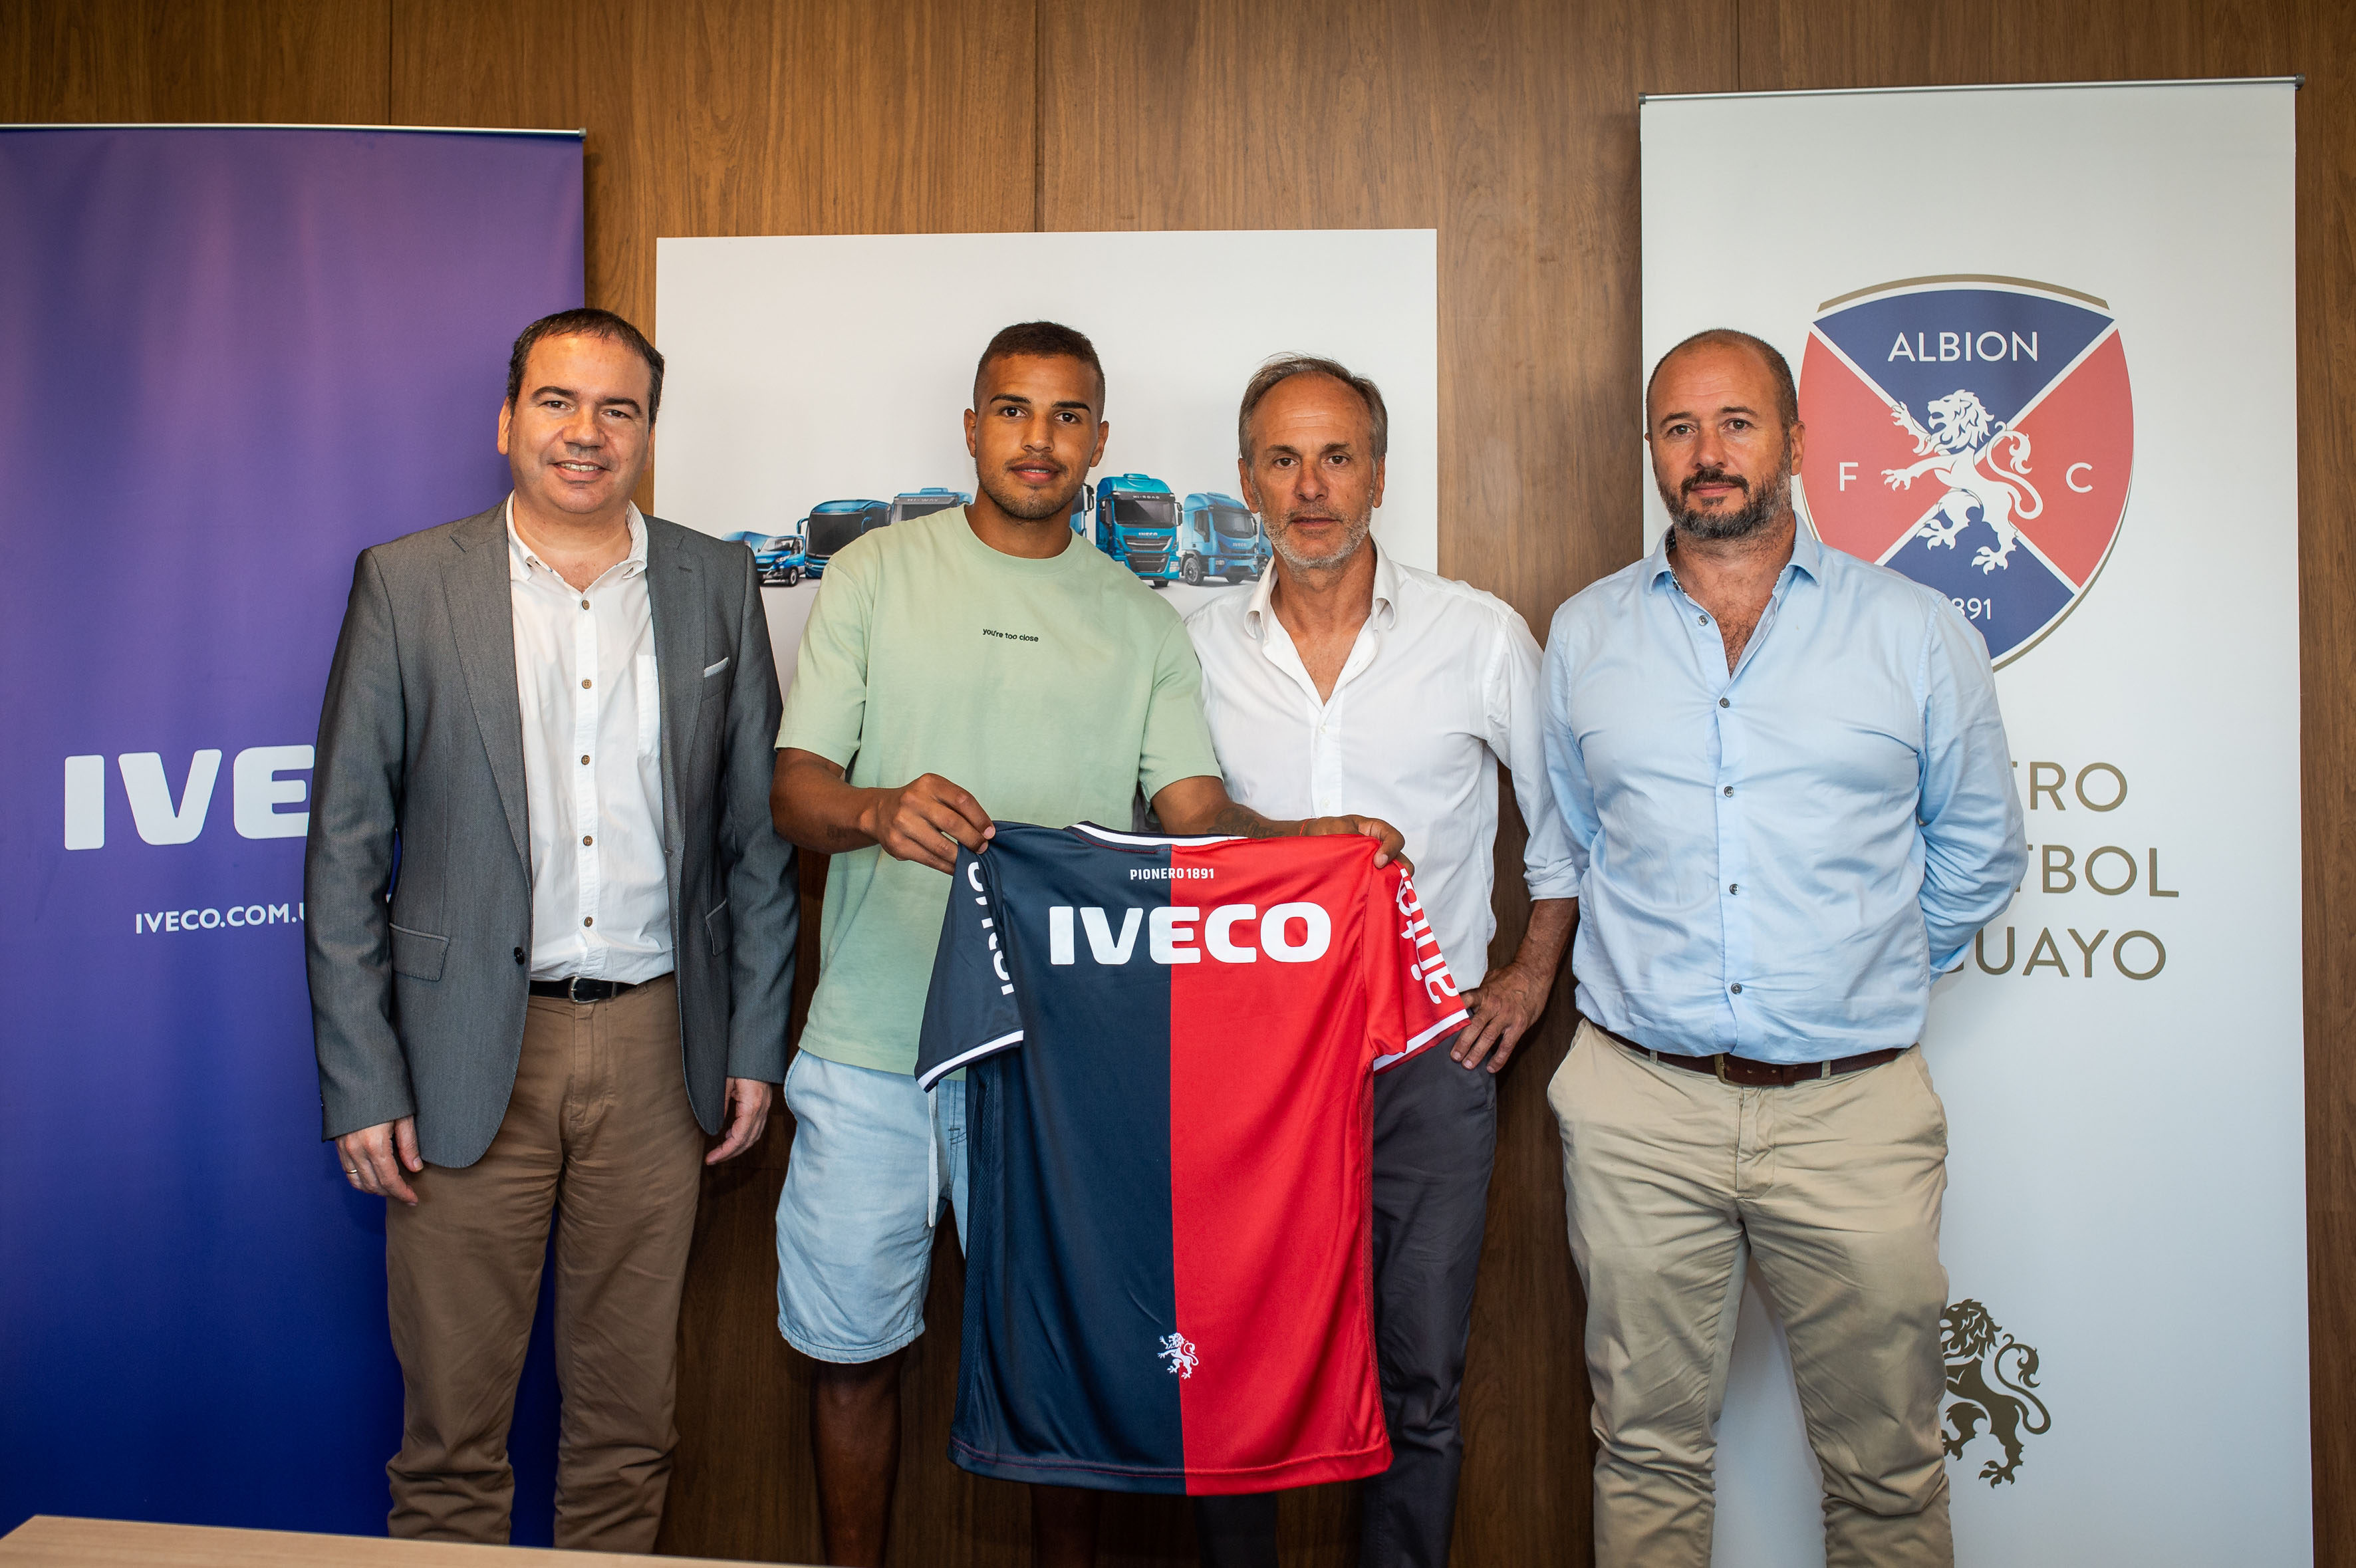 IVECO firmó un acuerdo con Albion Football Club para potenciar su crecimiento